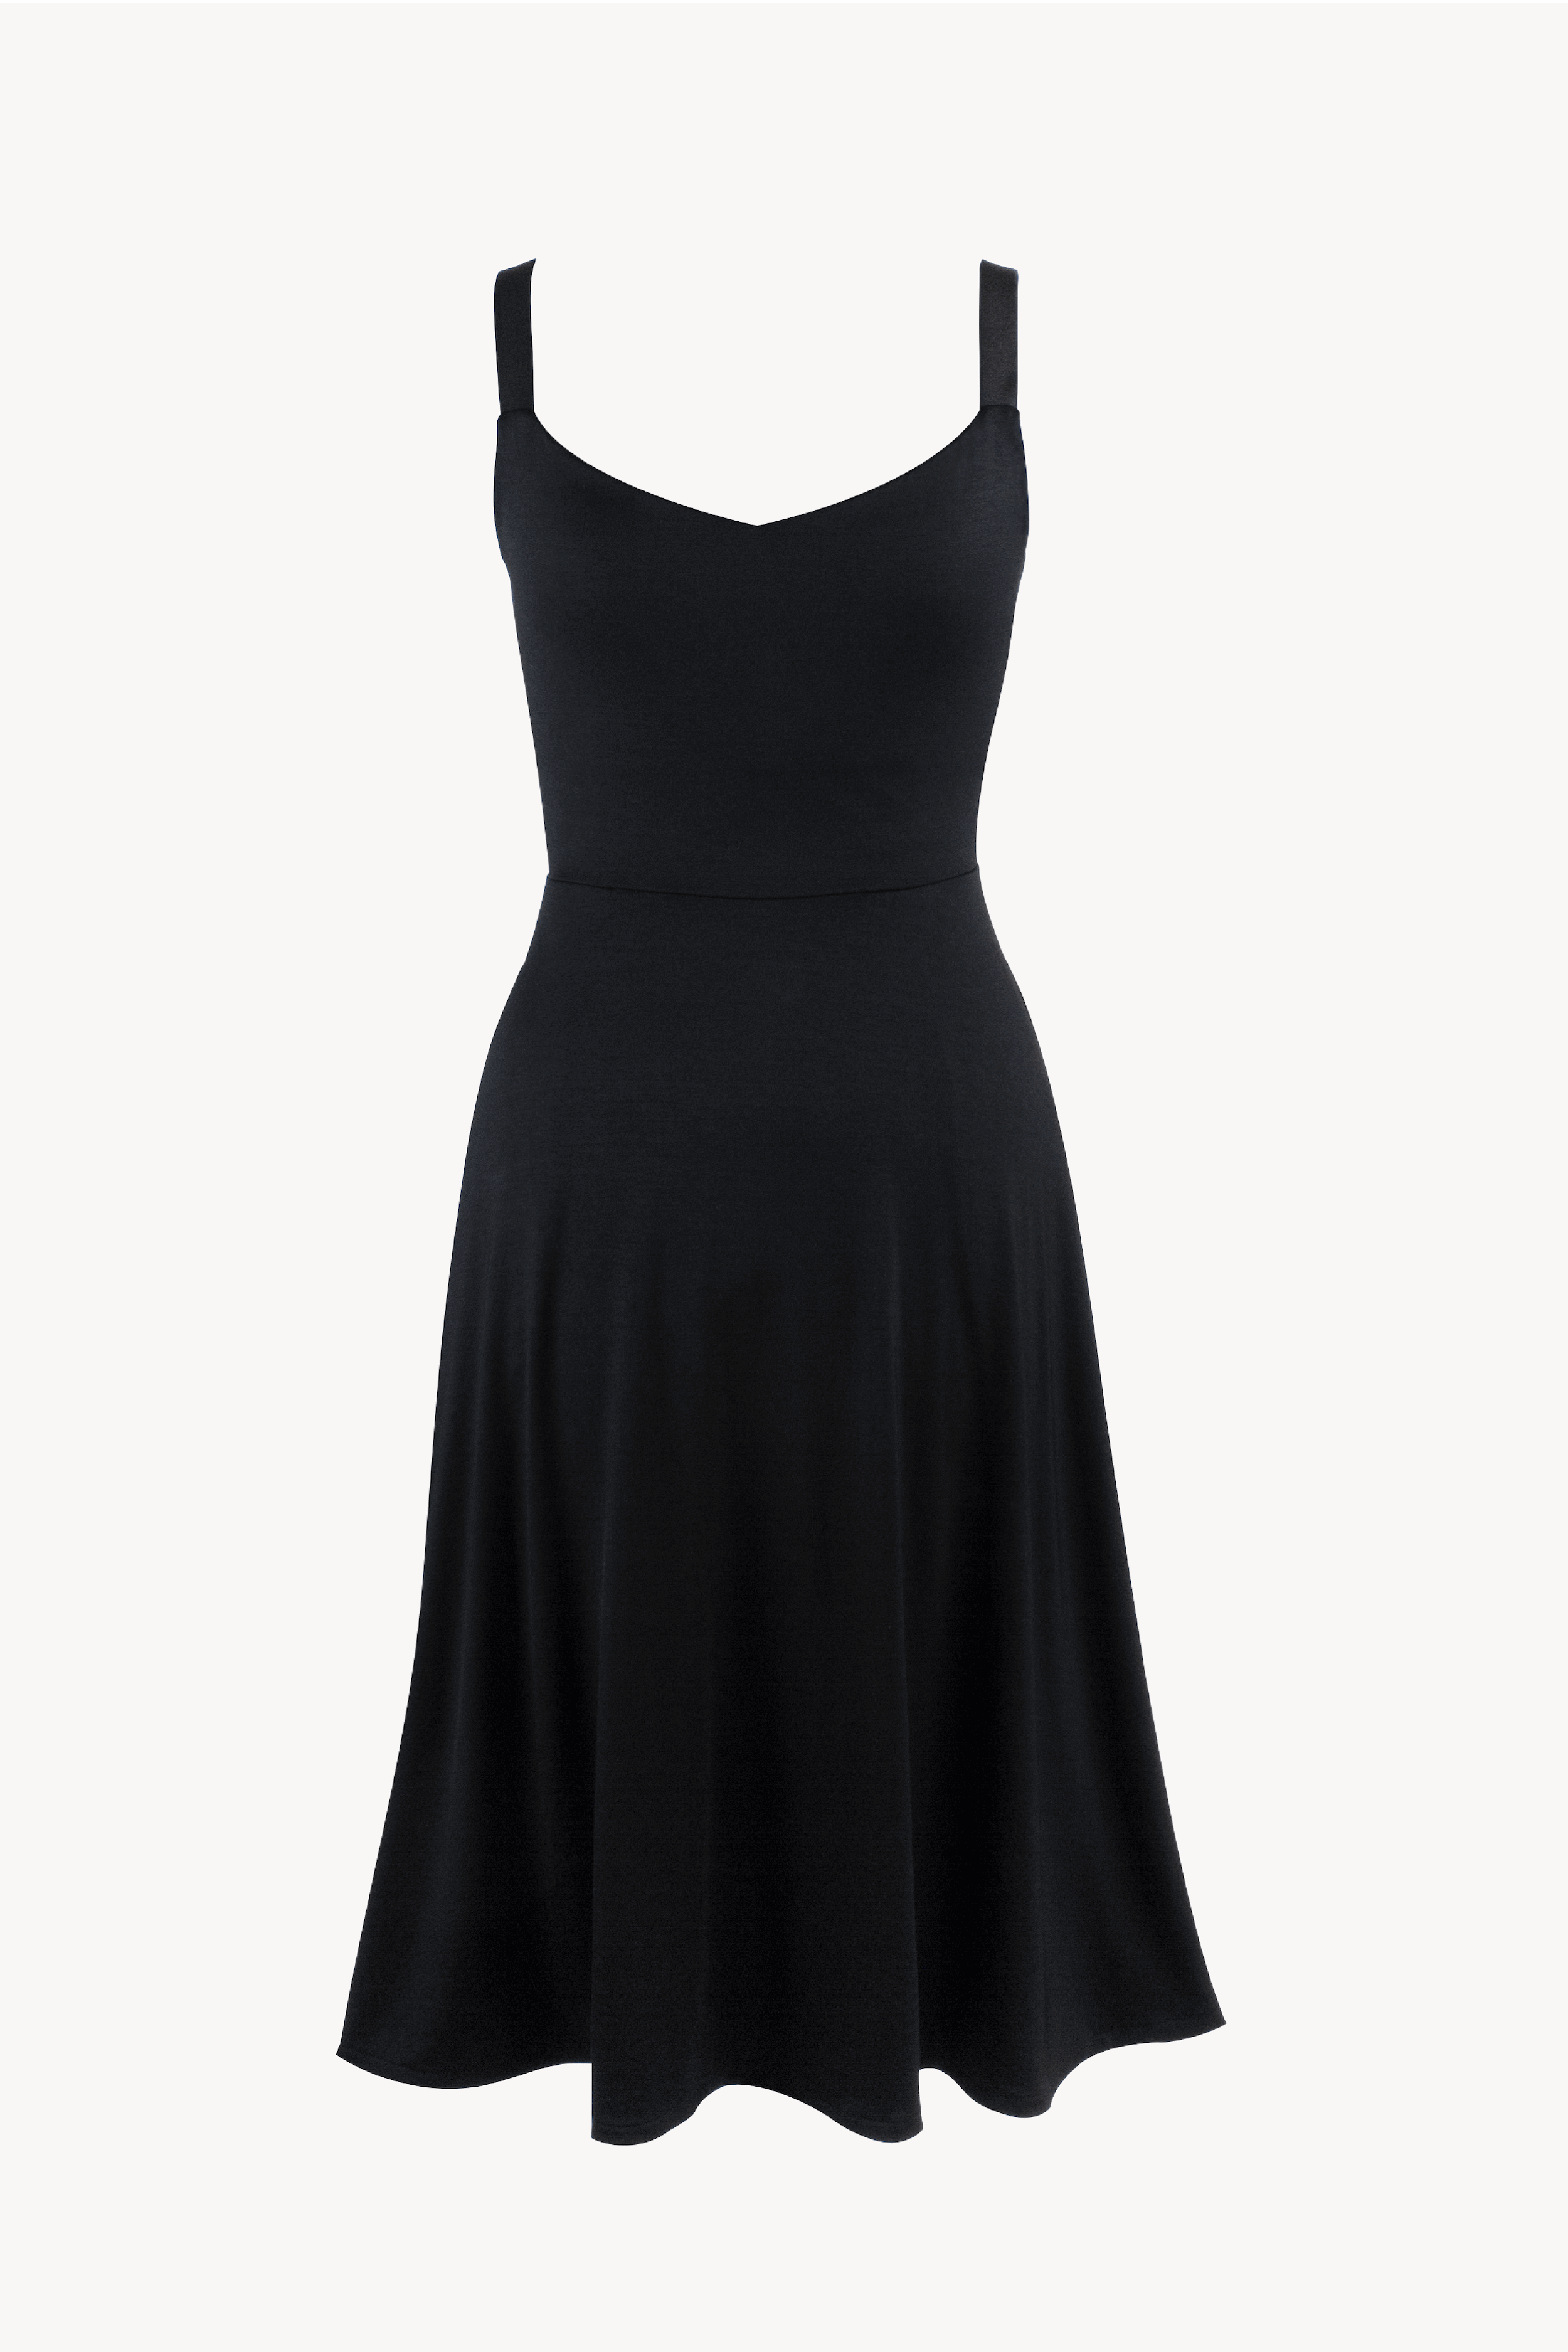 avantika Women A-line Black Dress - Buy avantika Women A-line Black Dress  Online at Best Prices in India | Flipkart.com